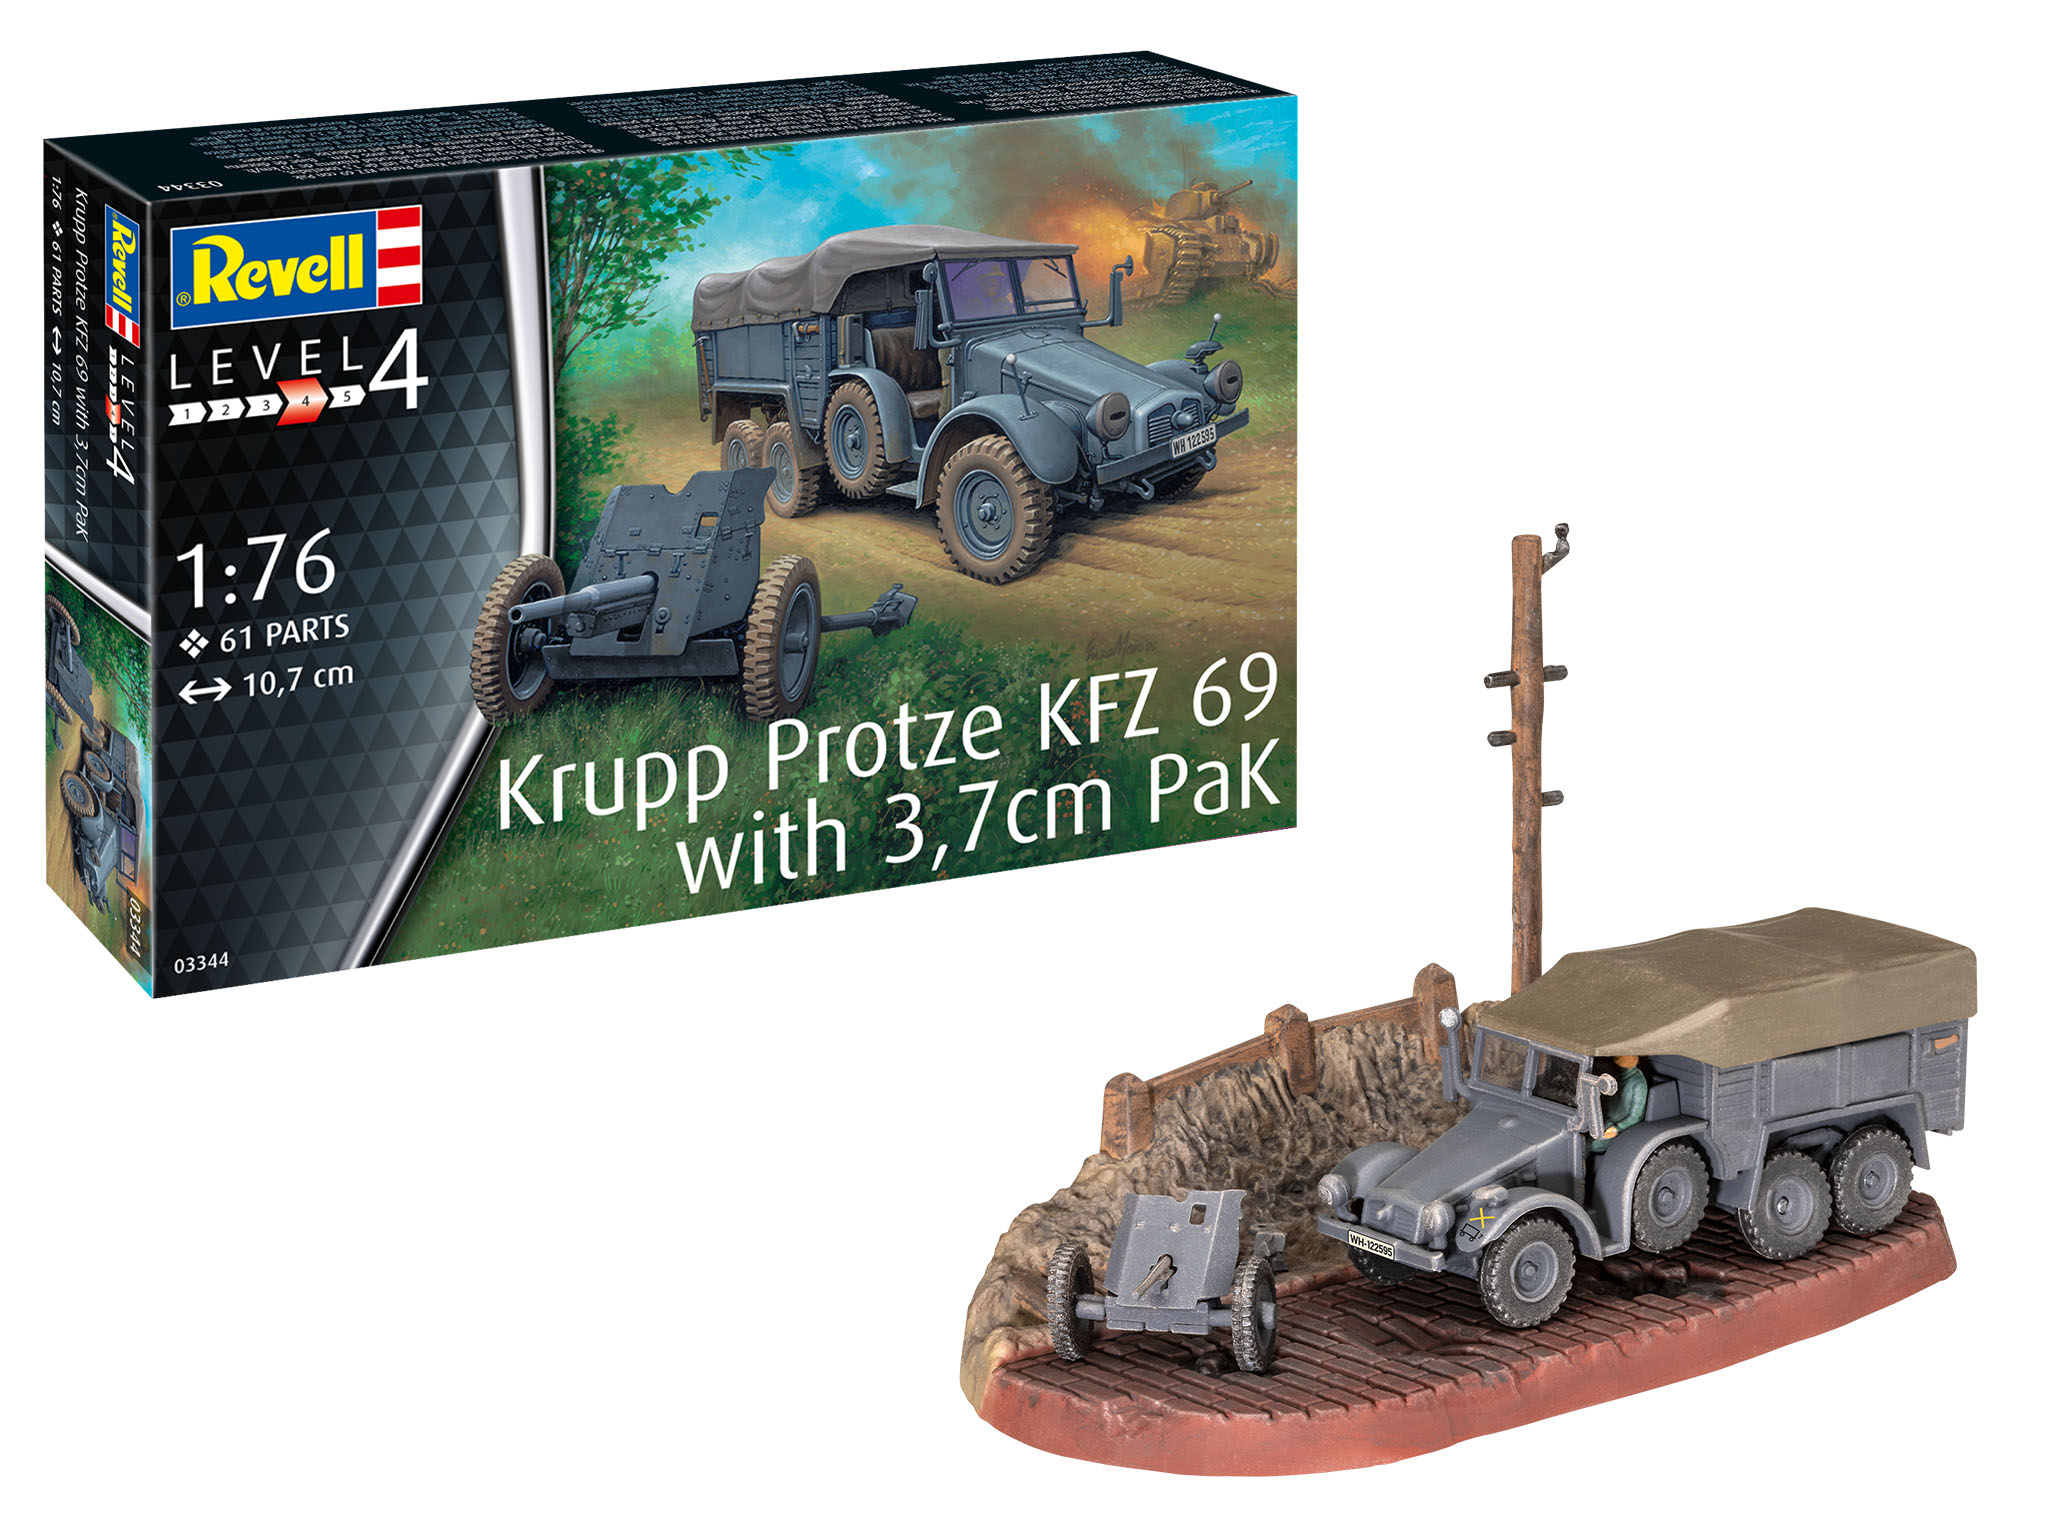 1:76 Krupp Protze KFZ 69 mit 3,7cm Pak